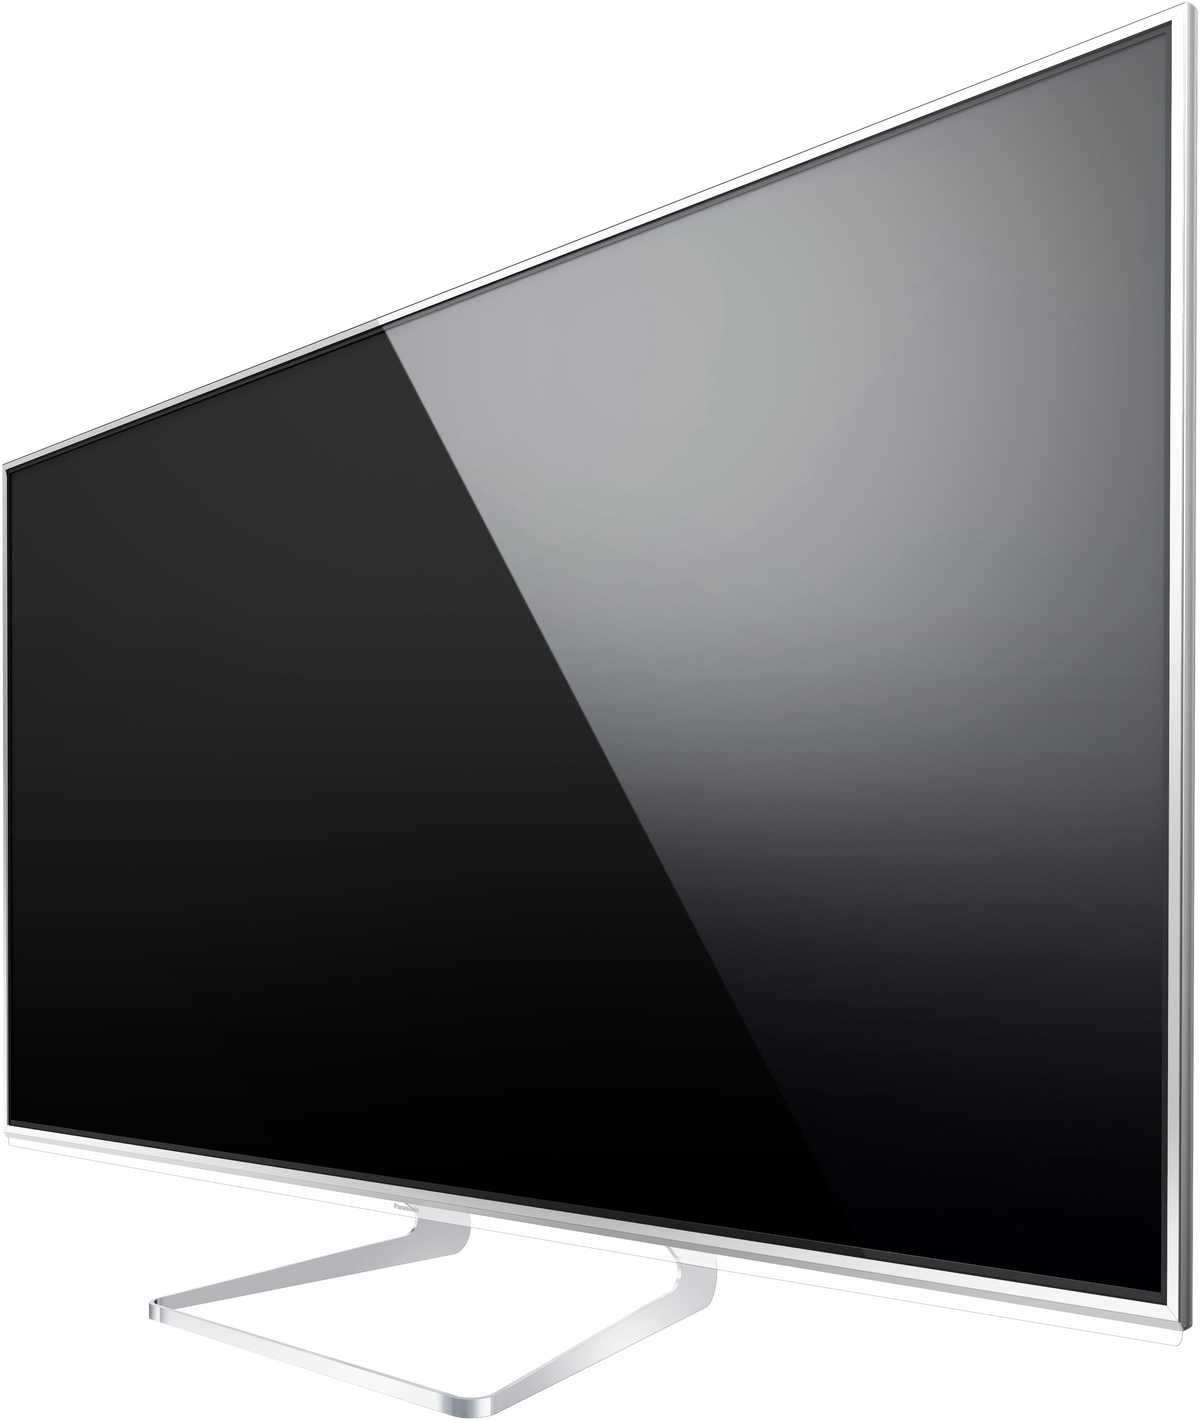 Panasonic tx-l(r)55wt60 - купить , скидки, цена, отзывы, обзор, характеристики - телевизоры